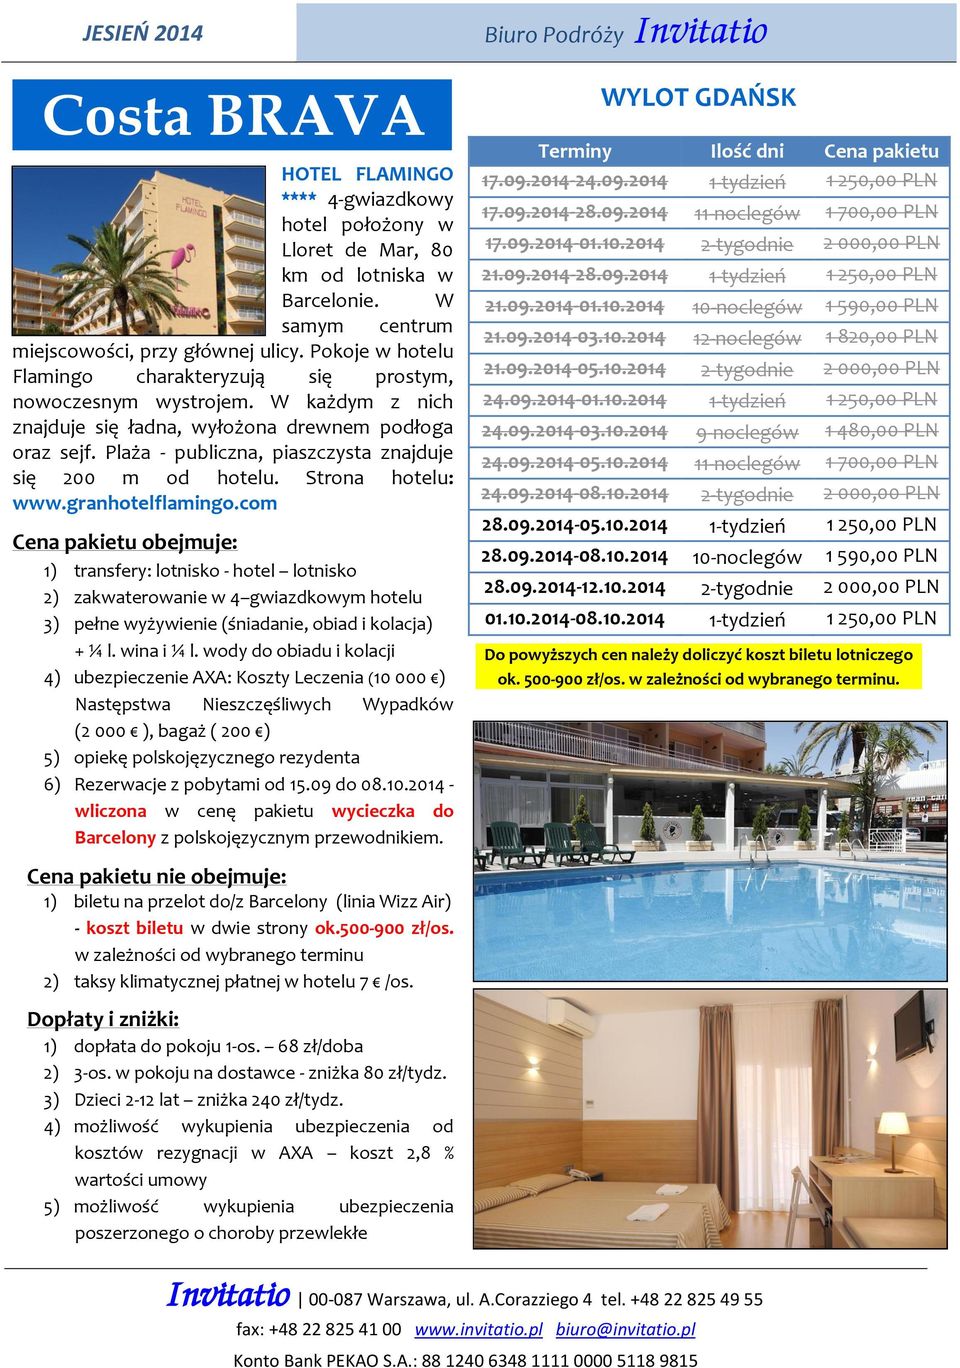 Plaża - publiczna, piaszczysta znajduje się 200 m od hotelu. Strona hotelu: www.granhotelflamingo.com 1) dopłata do pokoju 1-os. 68 zł/doba 2) 3-os. w pokoju na dostawce - zniżka 80 zł/tydz.